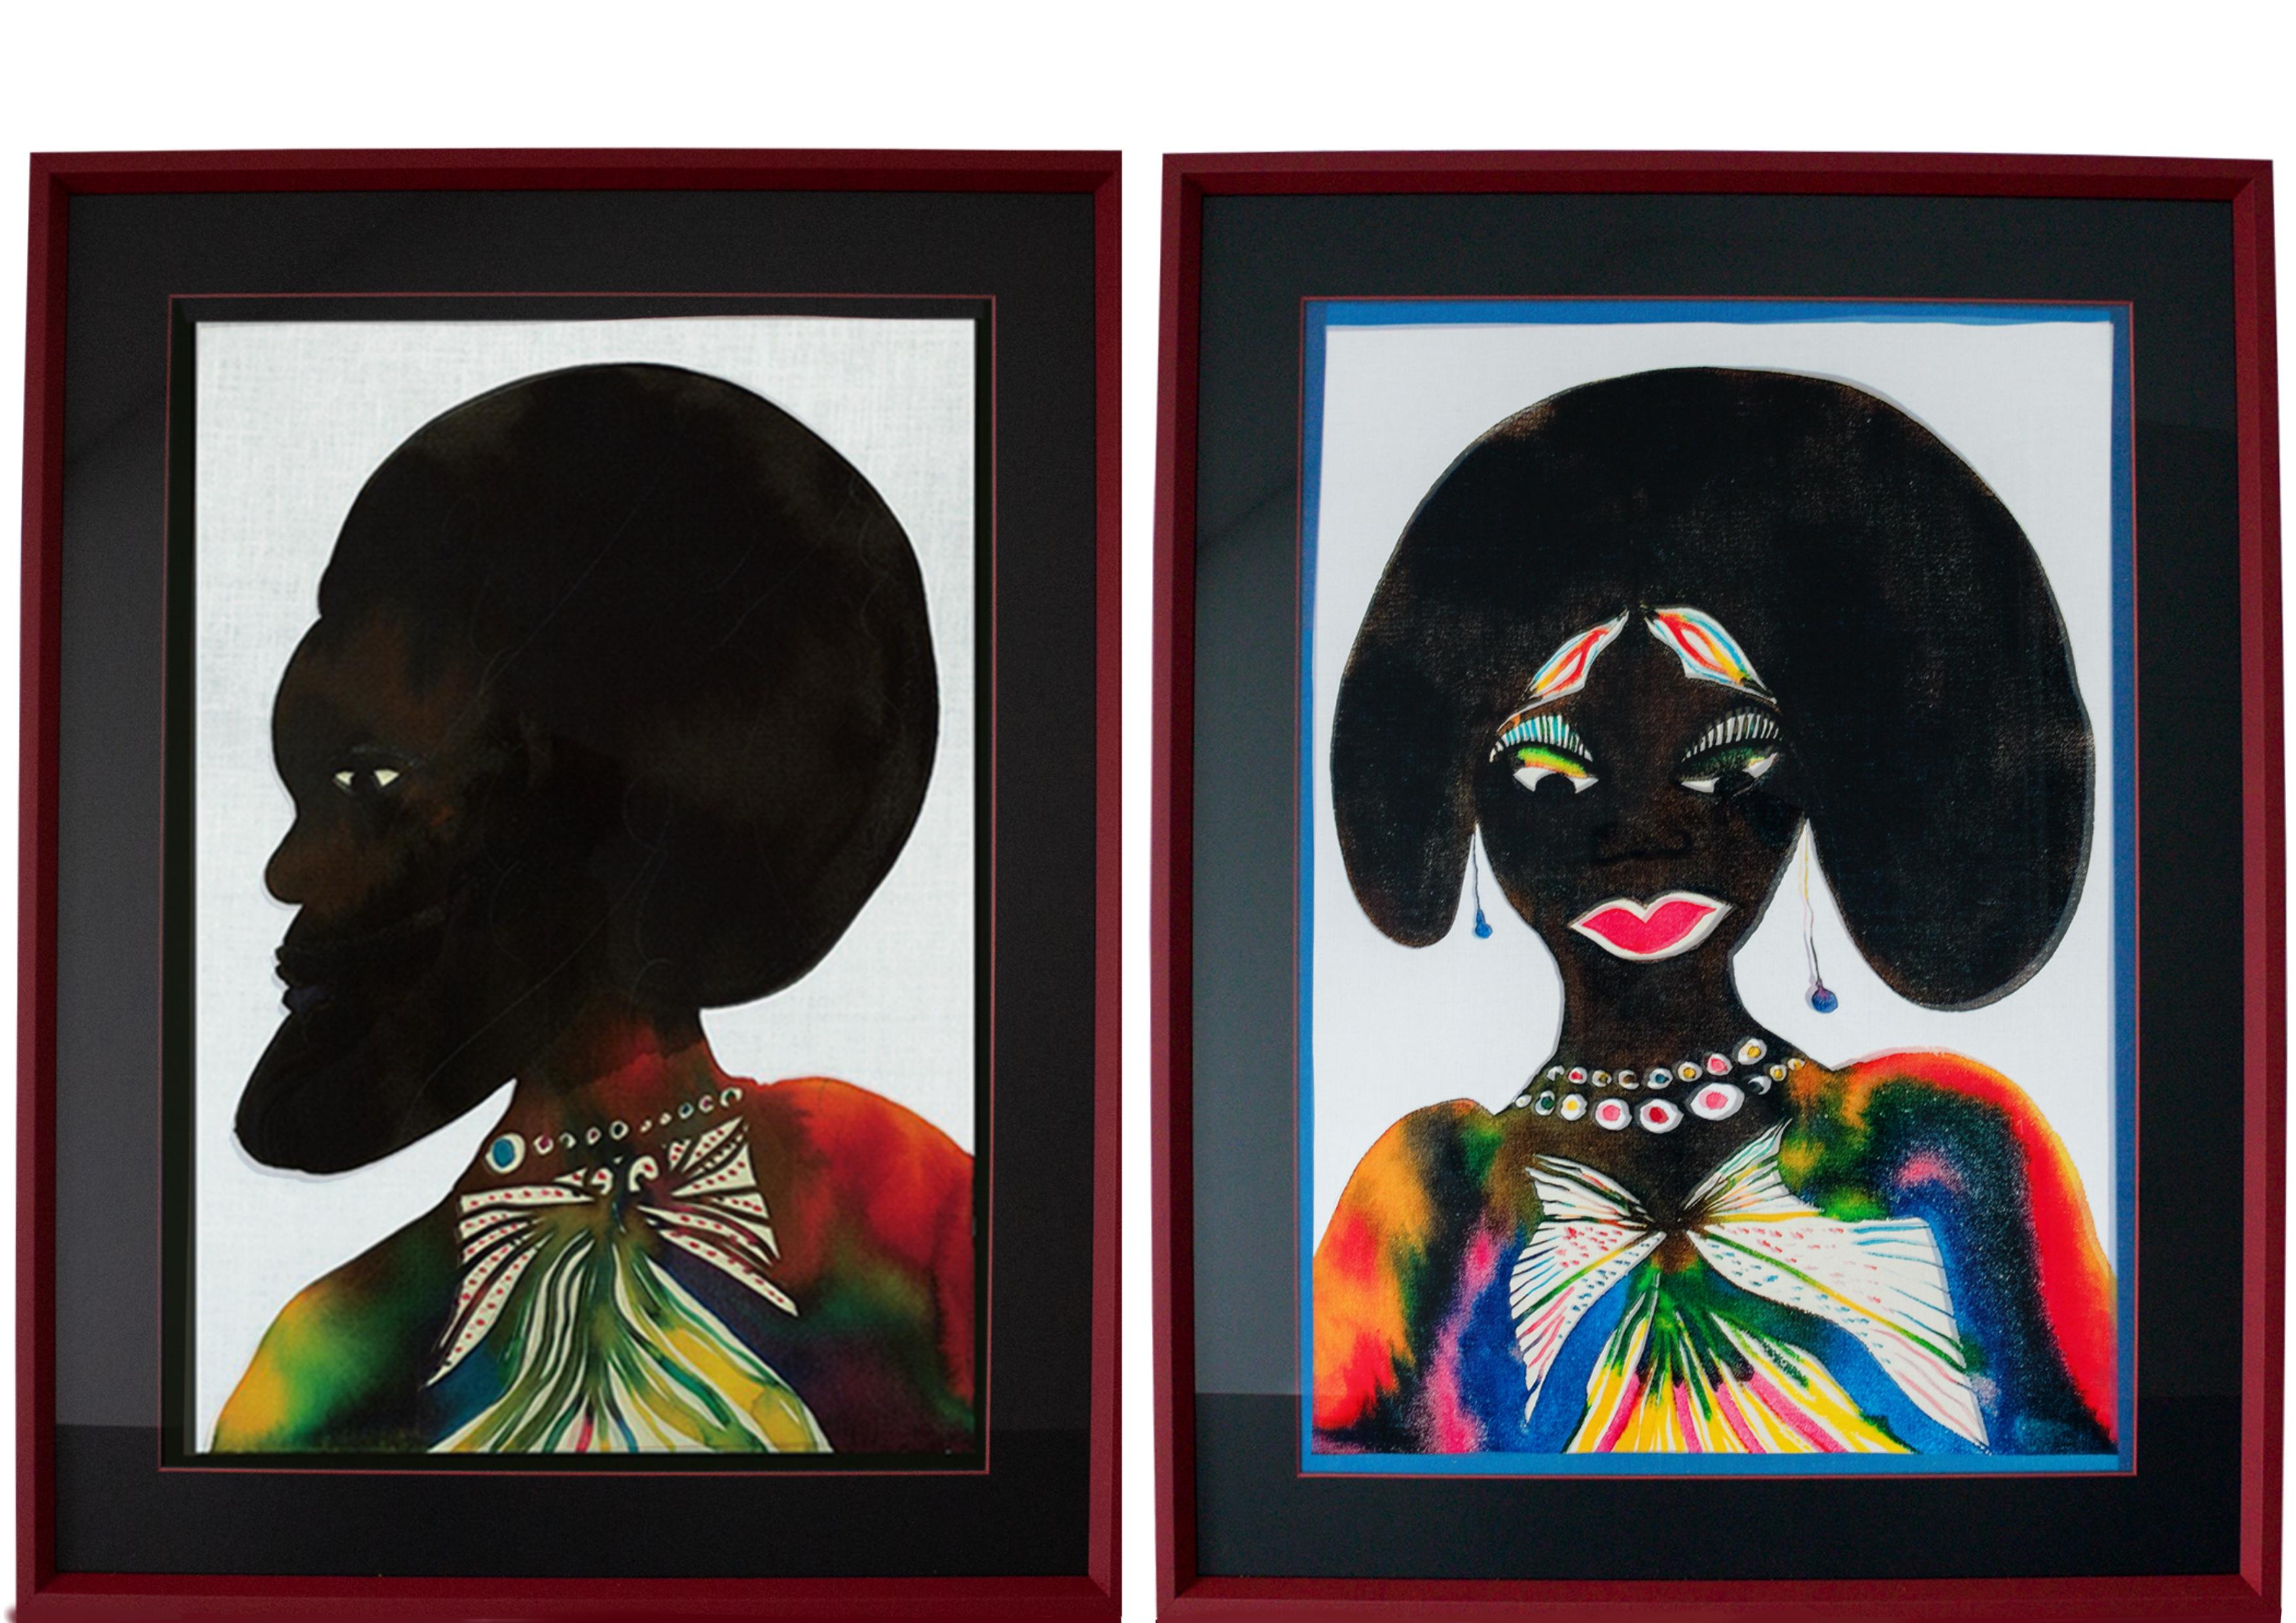 Chris Ofili - "Afromuse Couple".

Digitaldruck auf Leinen aus 100% Baumwolle.

Ausgabe 2014.

Gelb eingerahmt.

Ein wunderschönes Kunstwerk, das sich in jedem Raum und besonders im Wohnzimmer oder Flur gut macht.

Ausgezeichneter